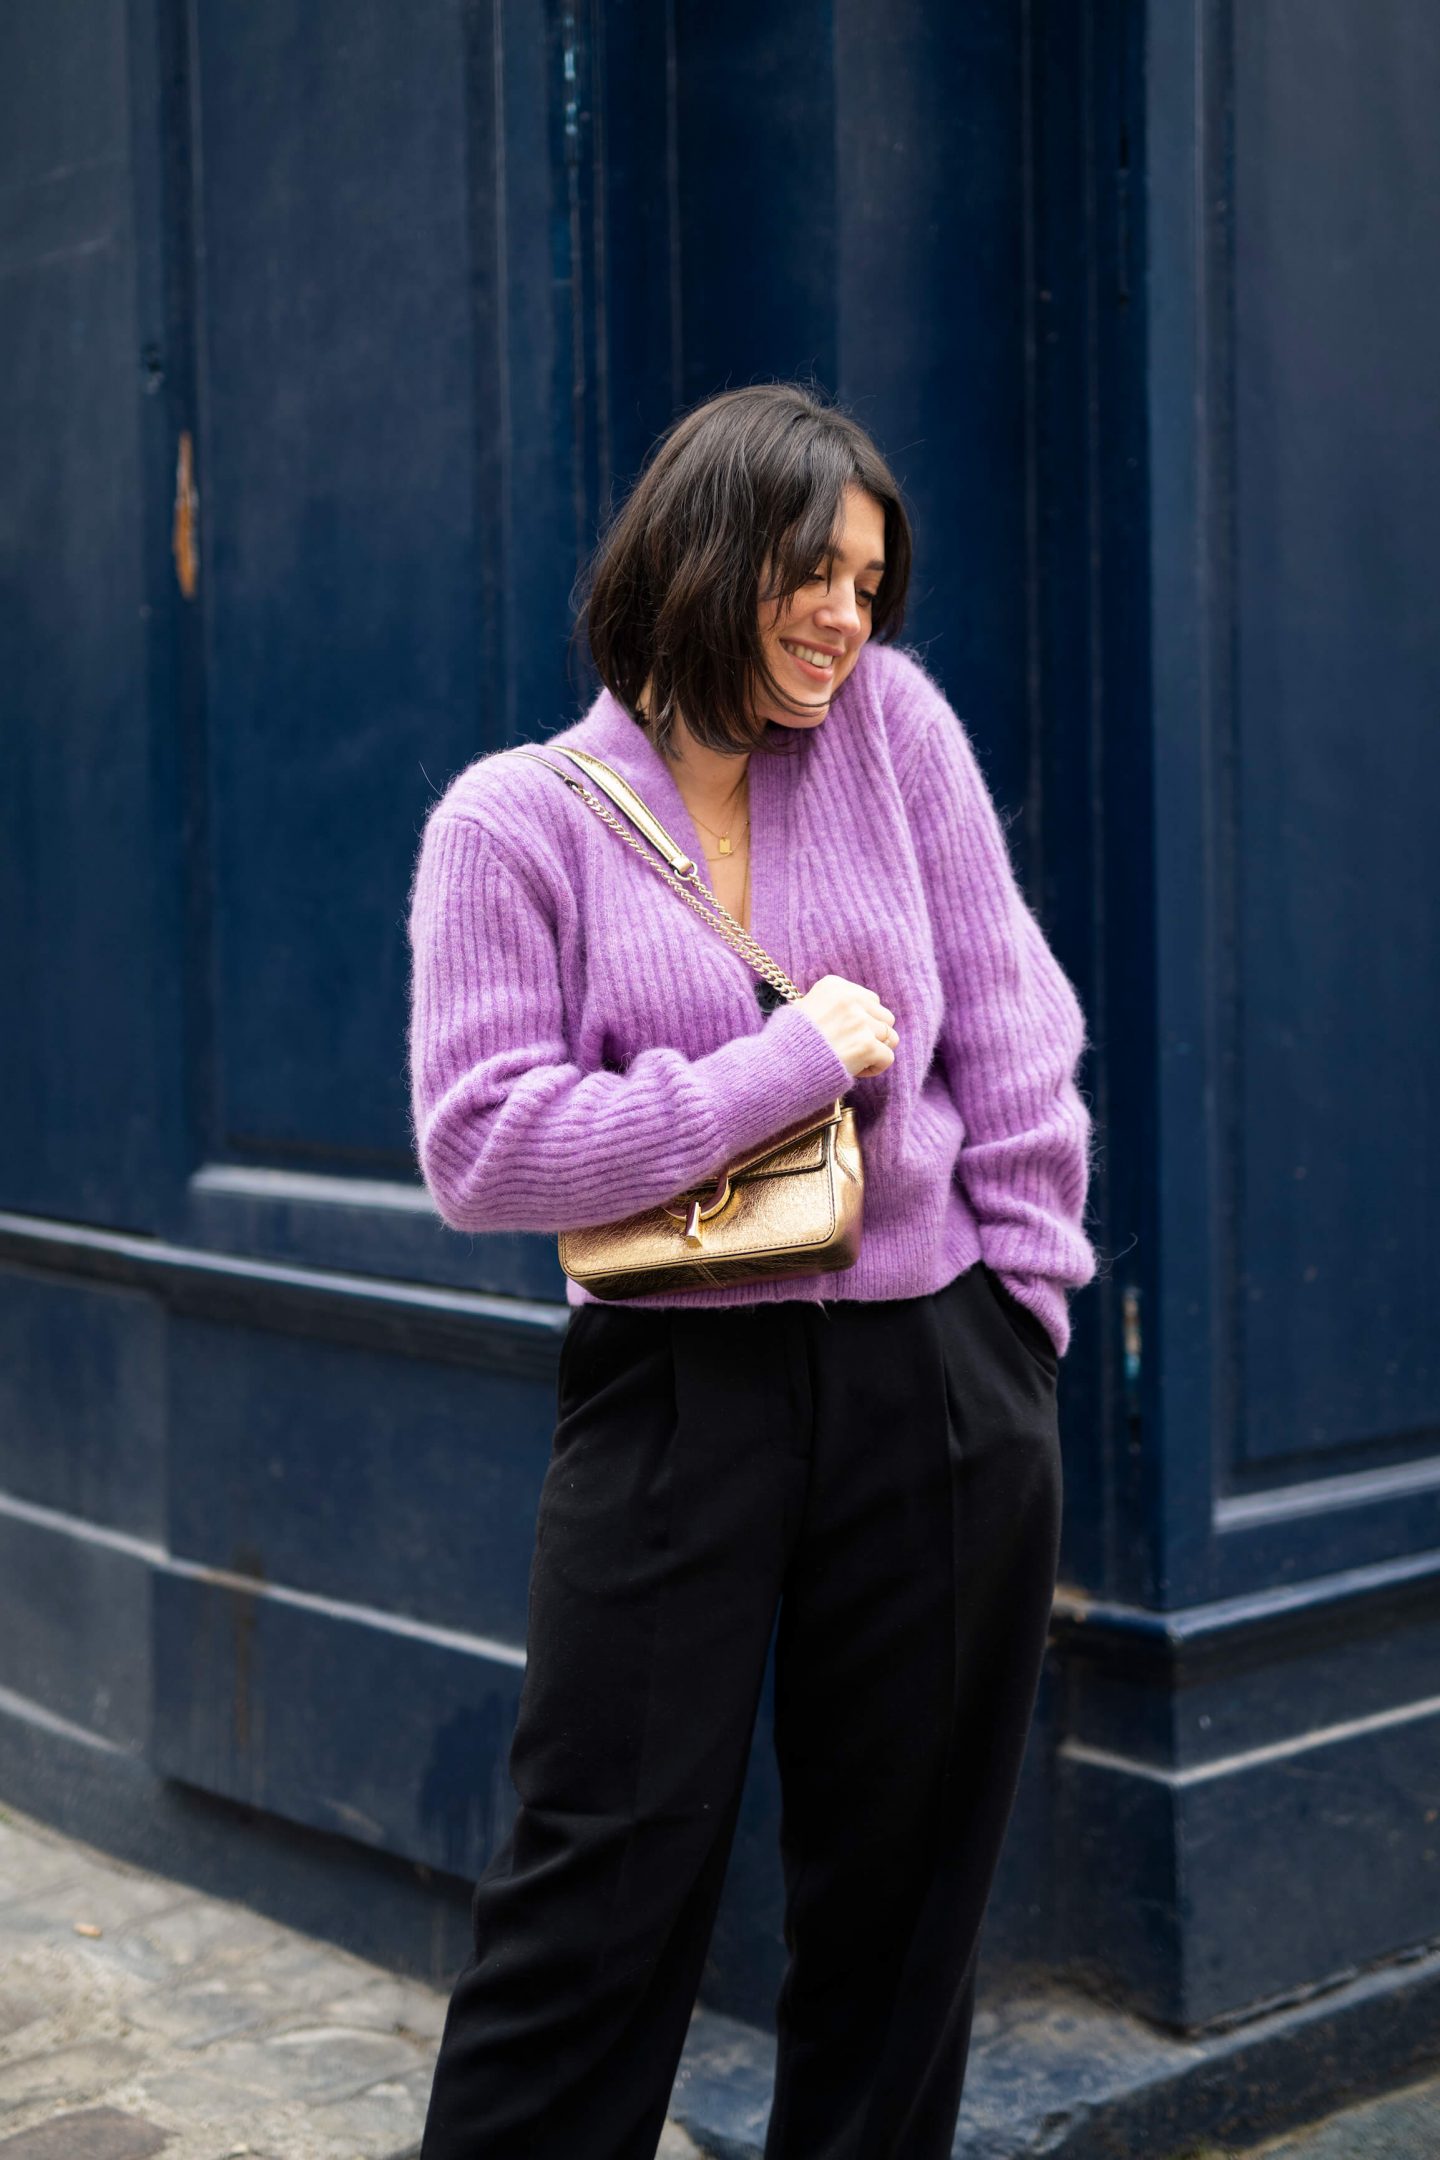 3 ways to wear Trois façons de porter le pull gilet violet lilas Anne-Laure L'atelier d'al latelierdal blog mode fashion lifestyle